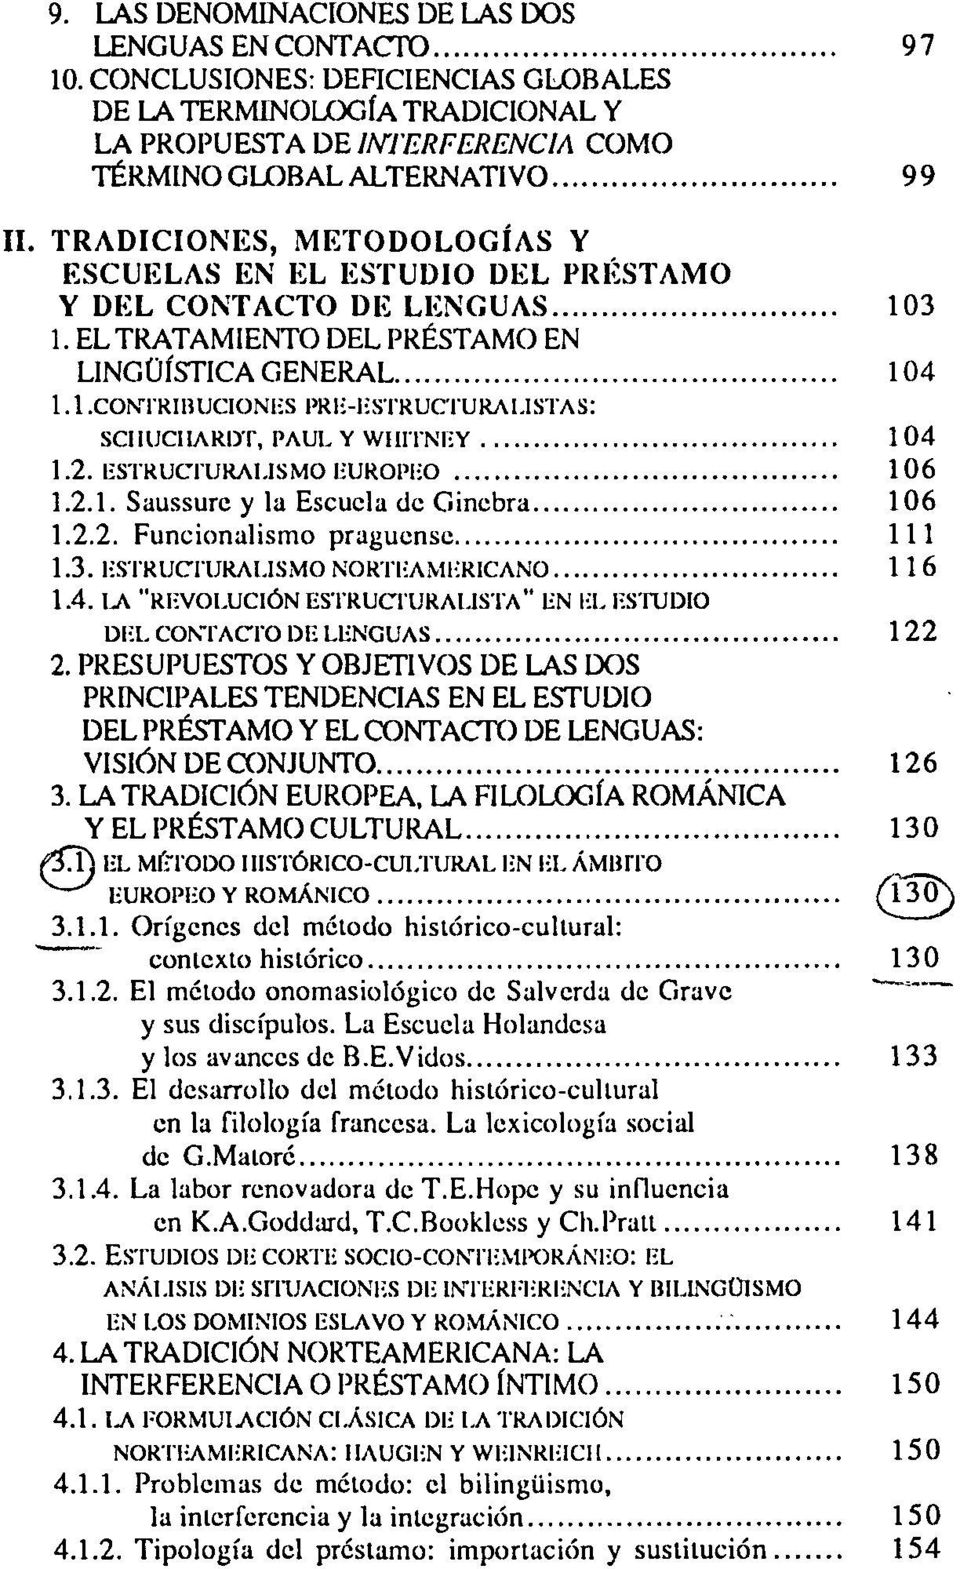 DEL CONTACTO DE LENGUAS 103 1. EL TRATAMIENTO DEL PRÉSTAMO EN LINGÜÍSTICA GENERAL 104 1.1.CONTRIBUCIONES PRE-ESTRUCTURAI.ISTAS: SCIIUCIIARDT, PAUL Y WIIITNEY 104 1.2. ESTRUCTURALISMO EUROPEO 106 1.2.1. Saussure y la Escuela de Ginebra 106 1.